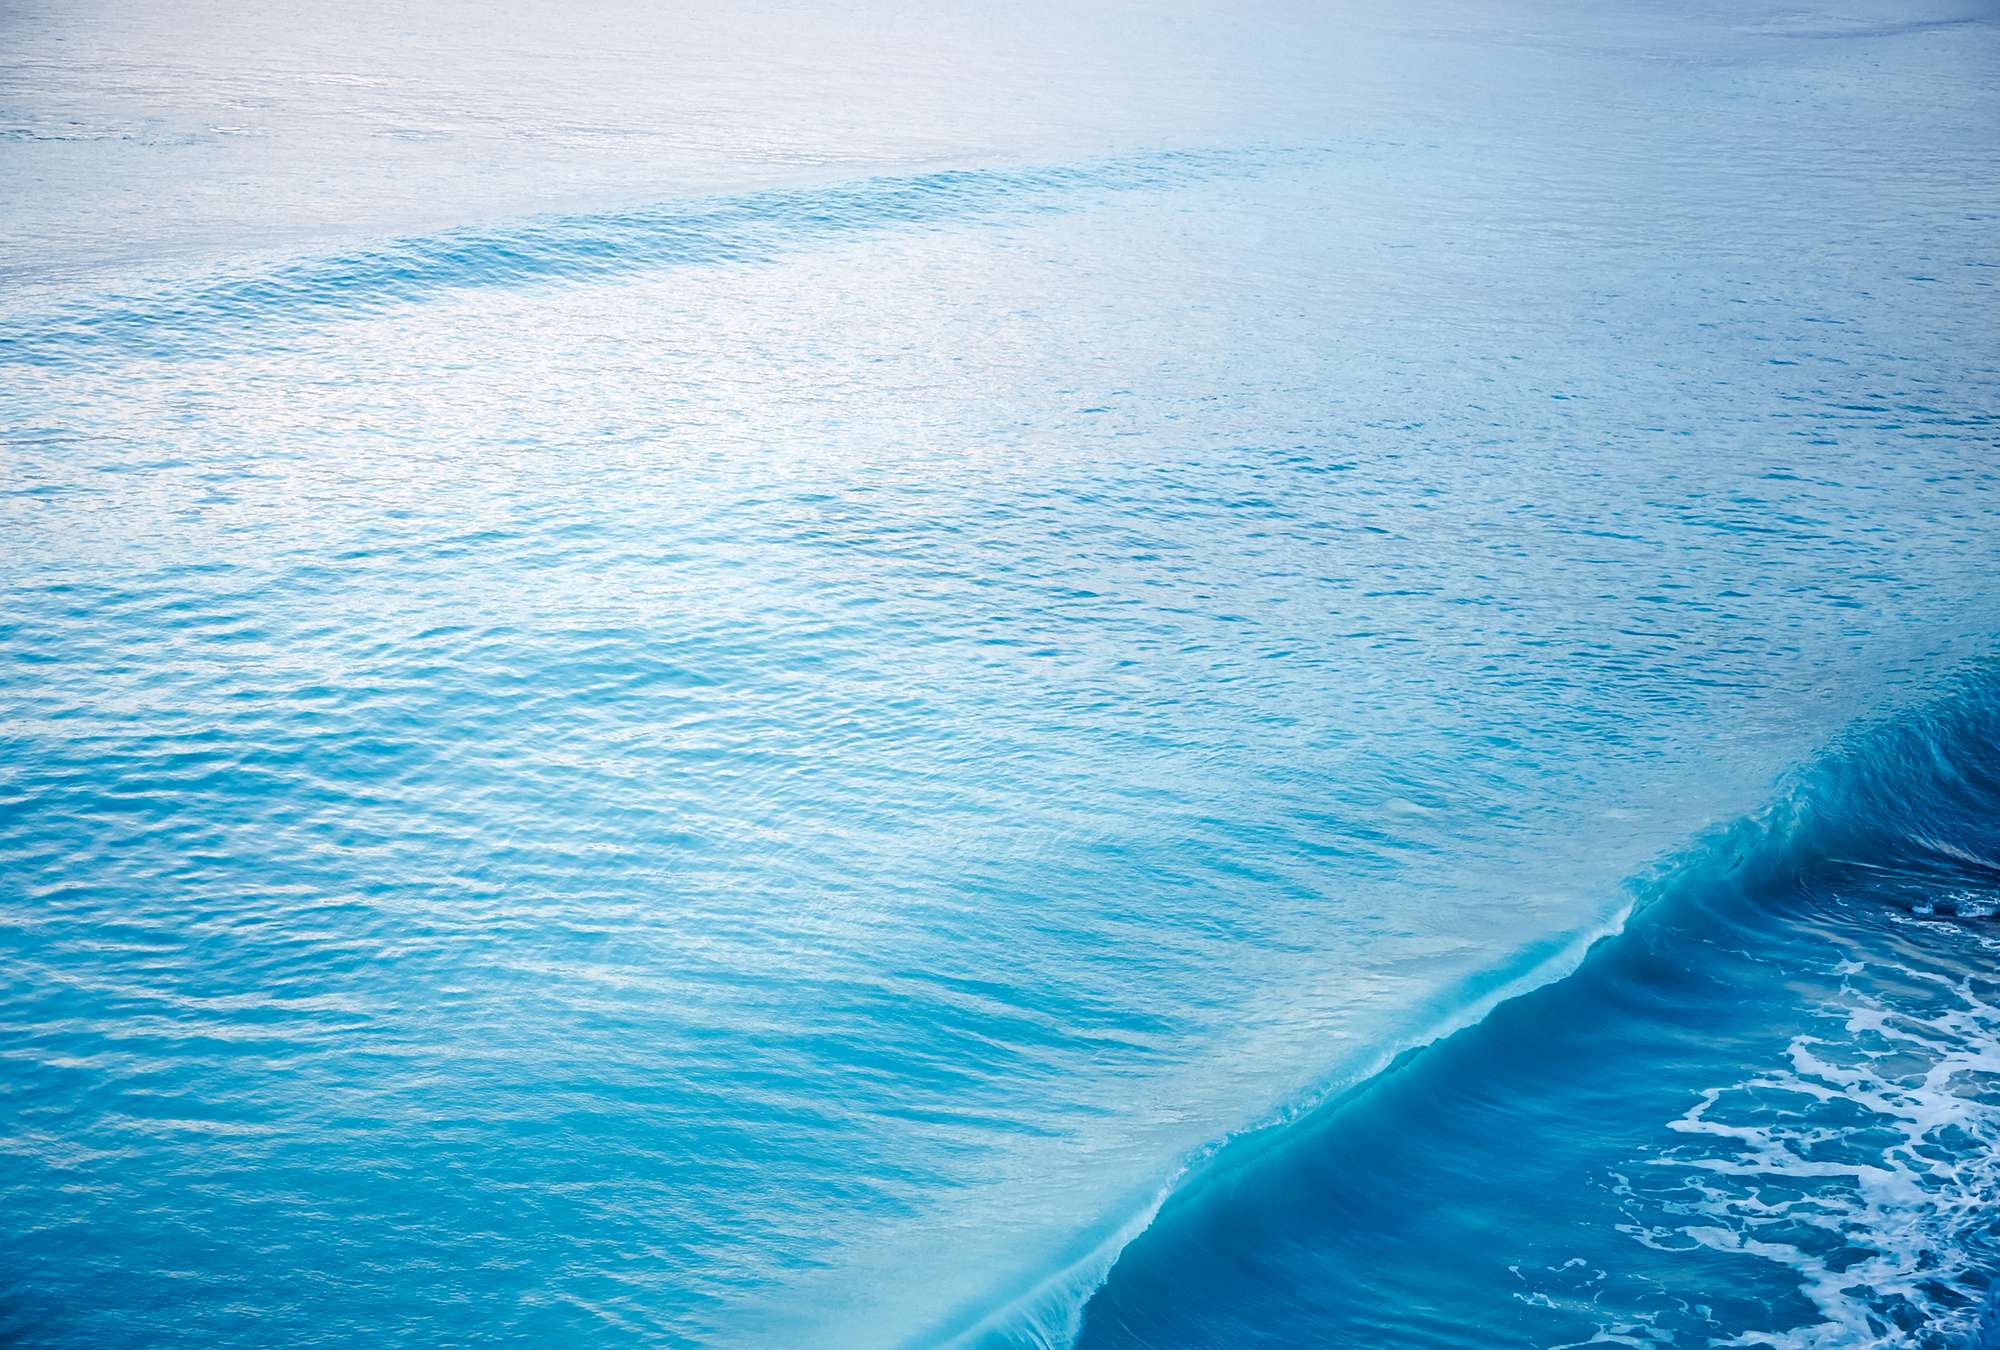             Fotomurali di un'onda che si infrange nel mare
        